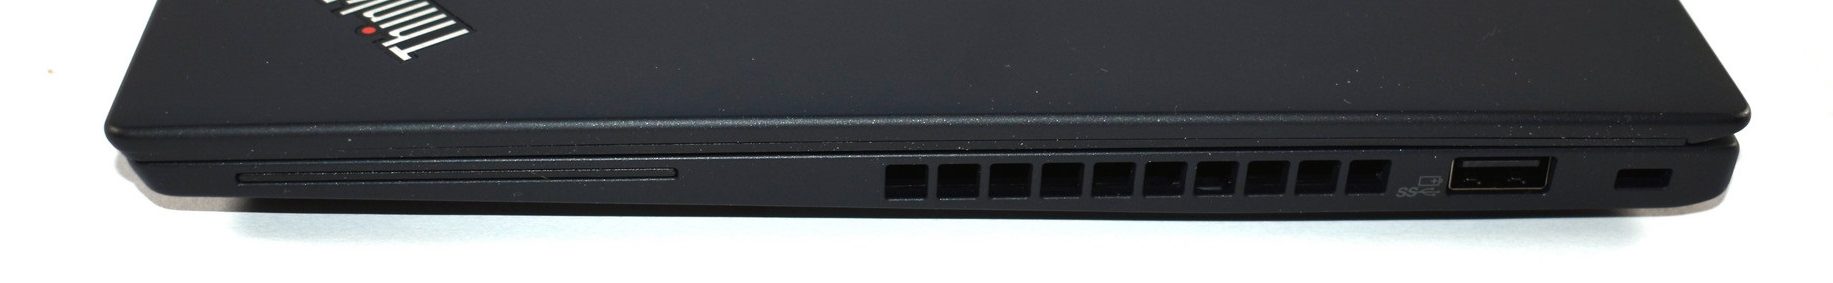 Đánh giá laptop Lenovo ThinkPad X280: Cải tiến toàn diện !, chuyên trang tư vấn laptop